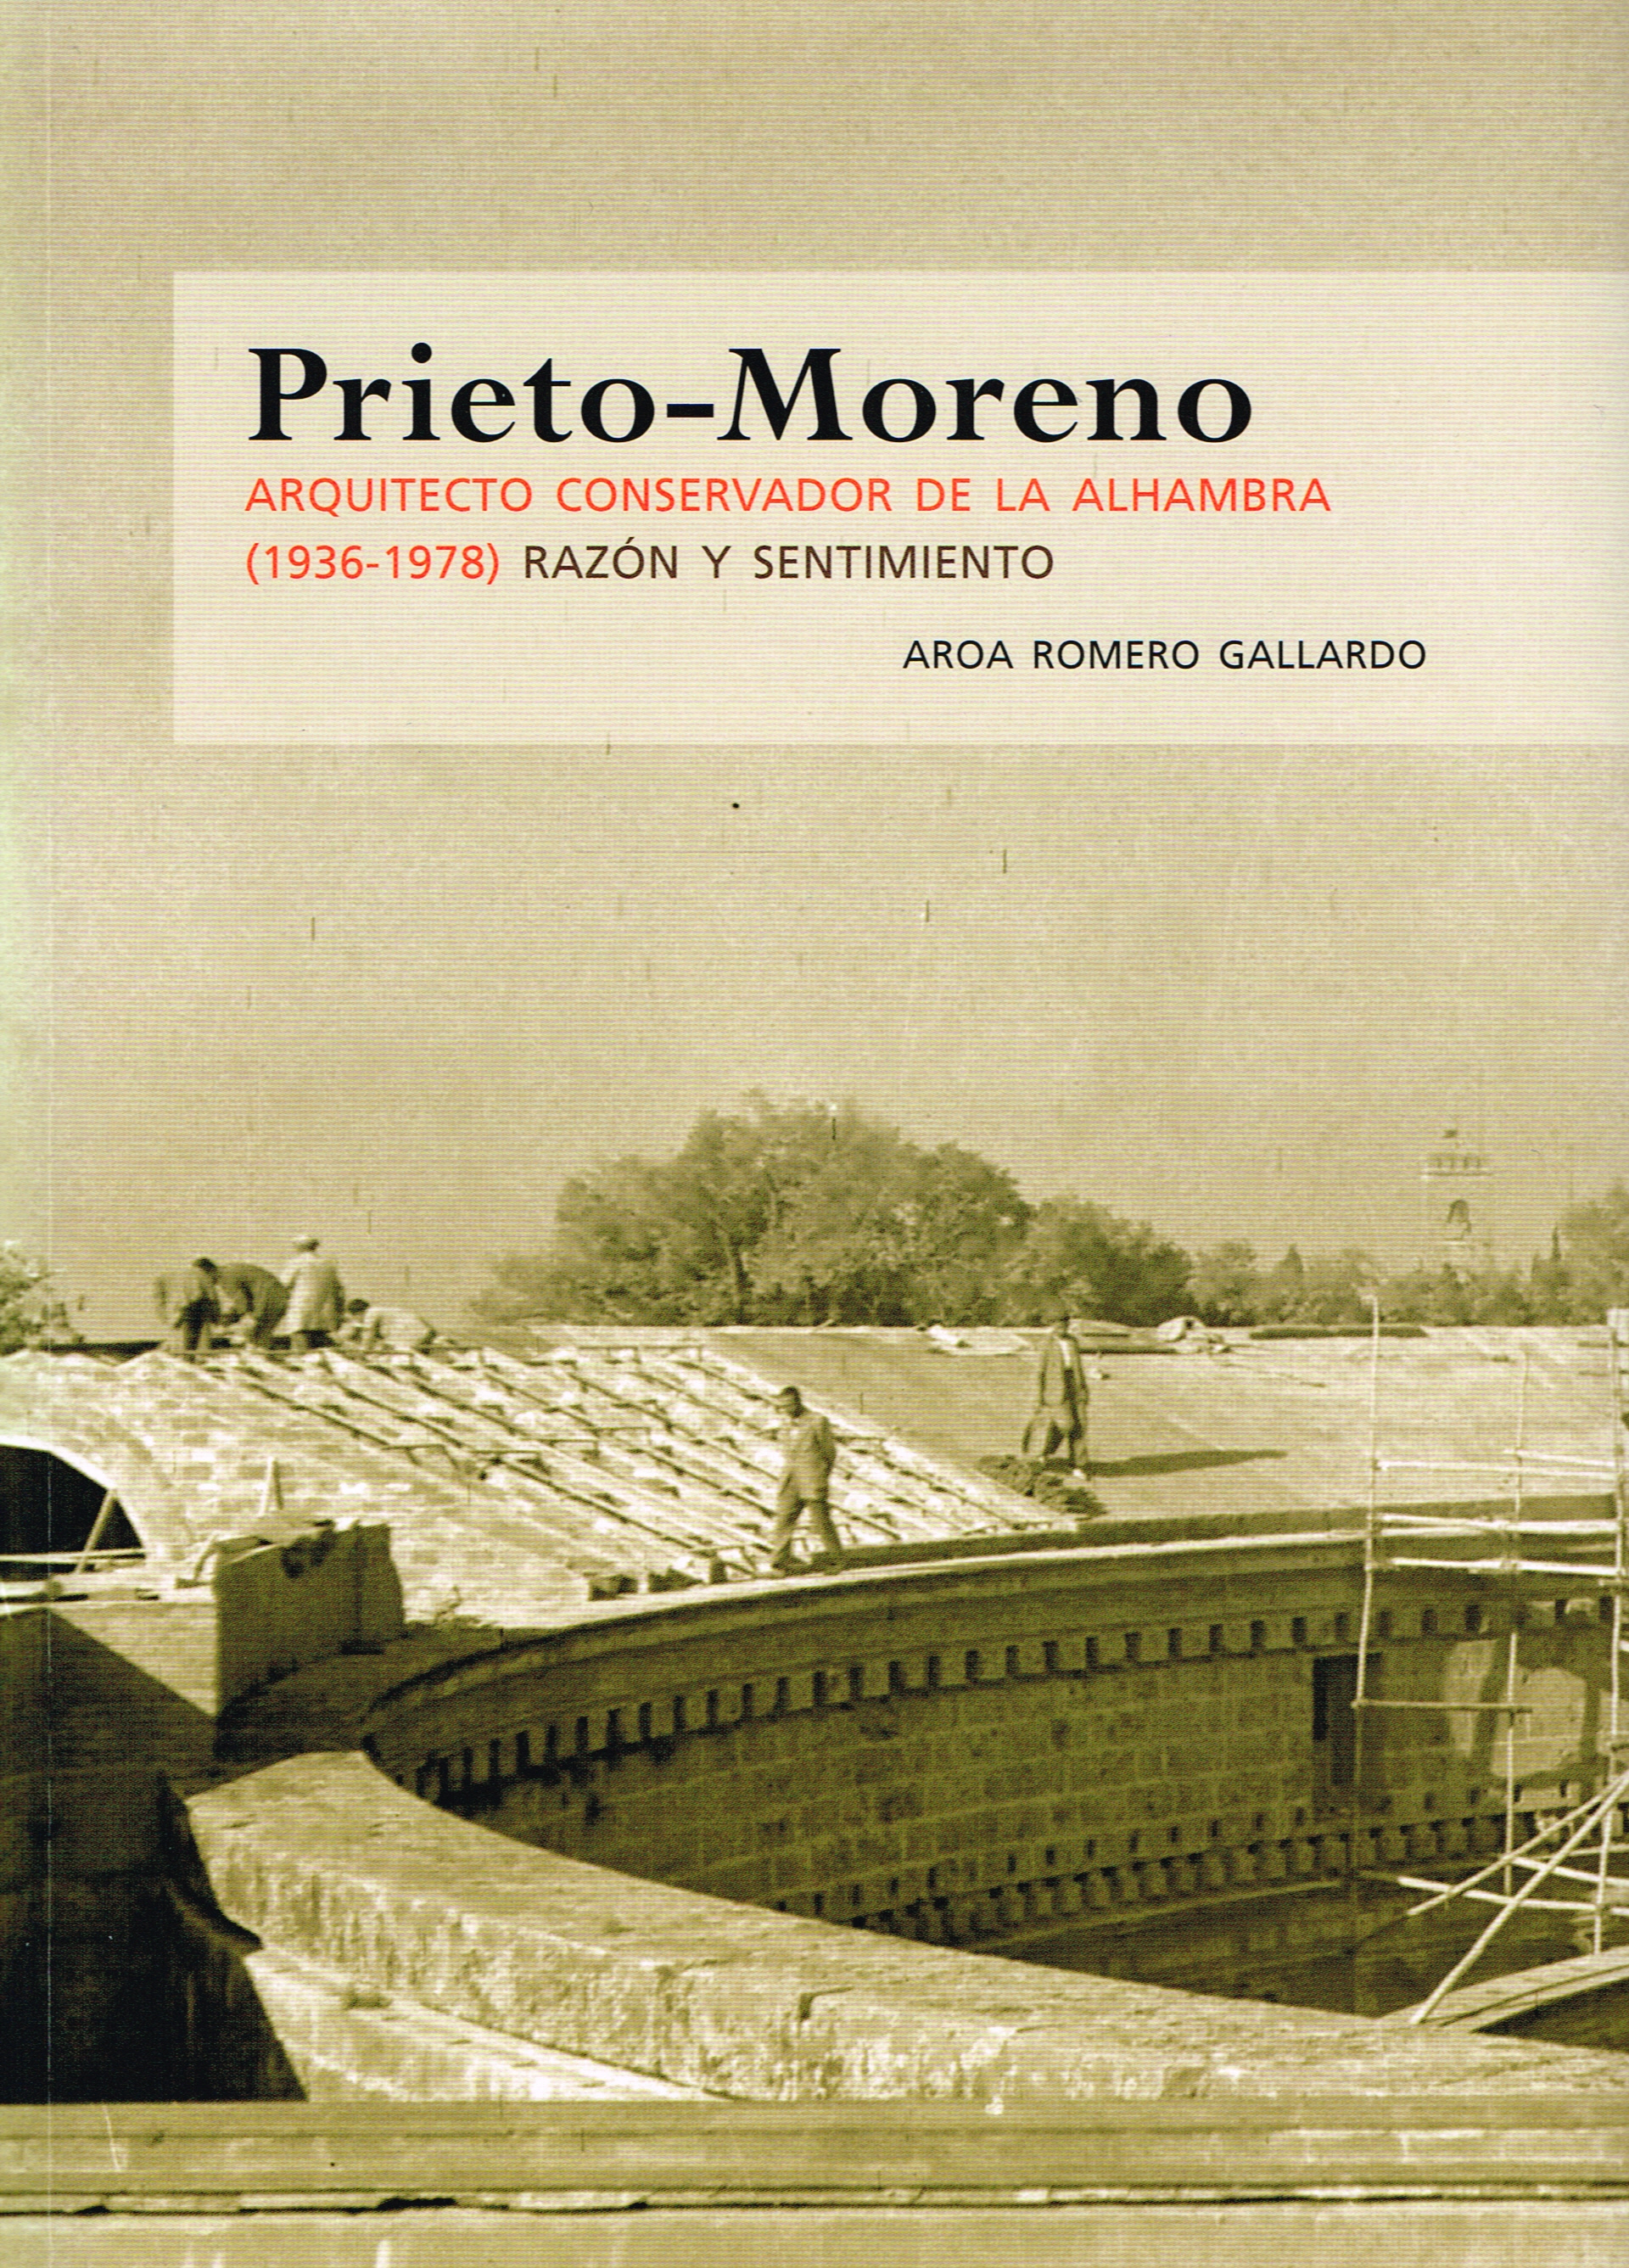 Prieto-Moreno. Arquitecto conservador de la Alhambra (1936-1978). Razón y sentimiento.